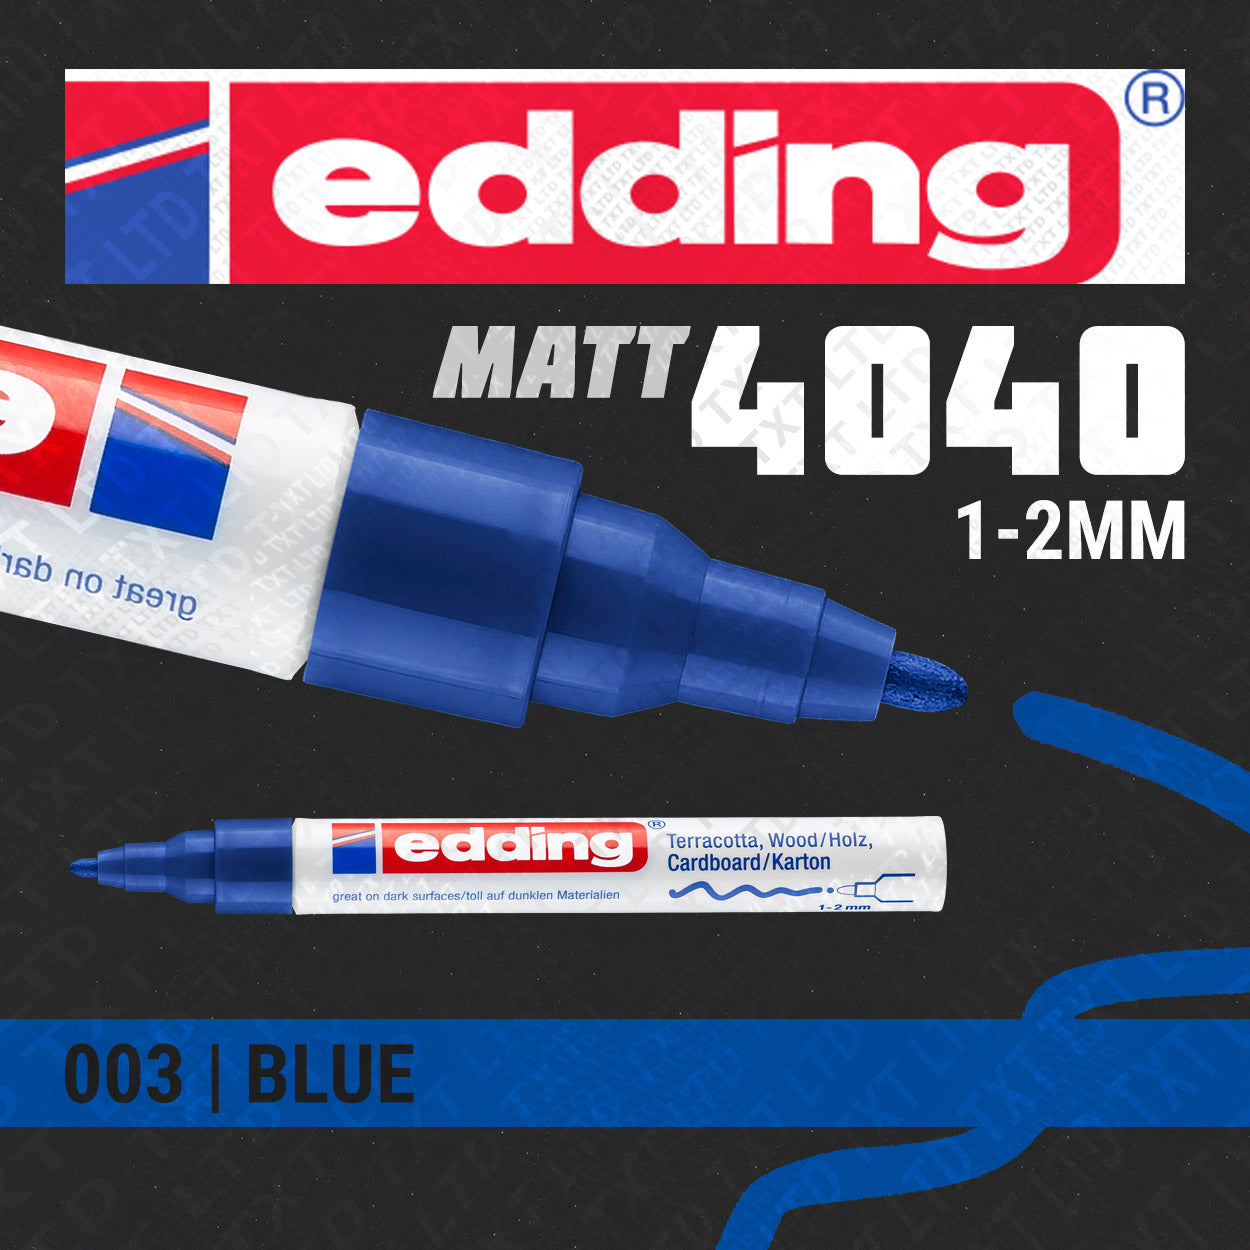 Rotulador de pintura mate Edding 4040